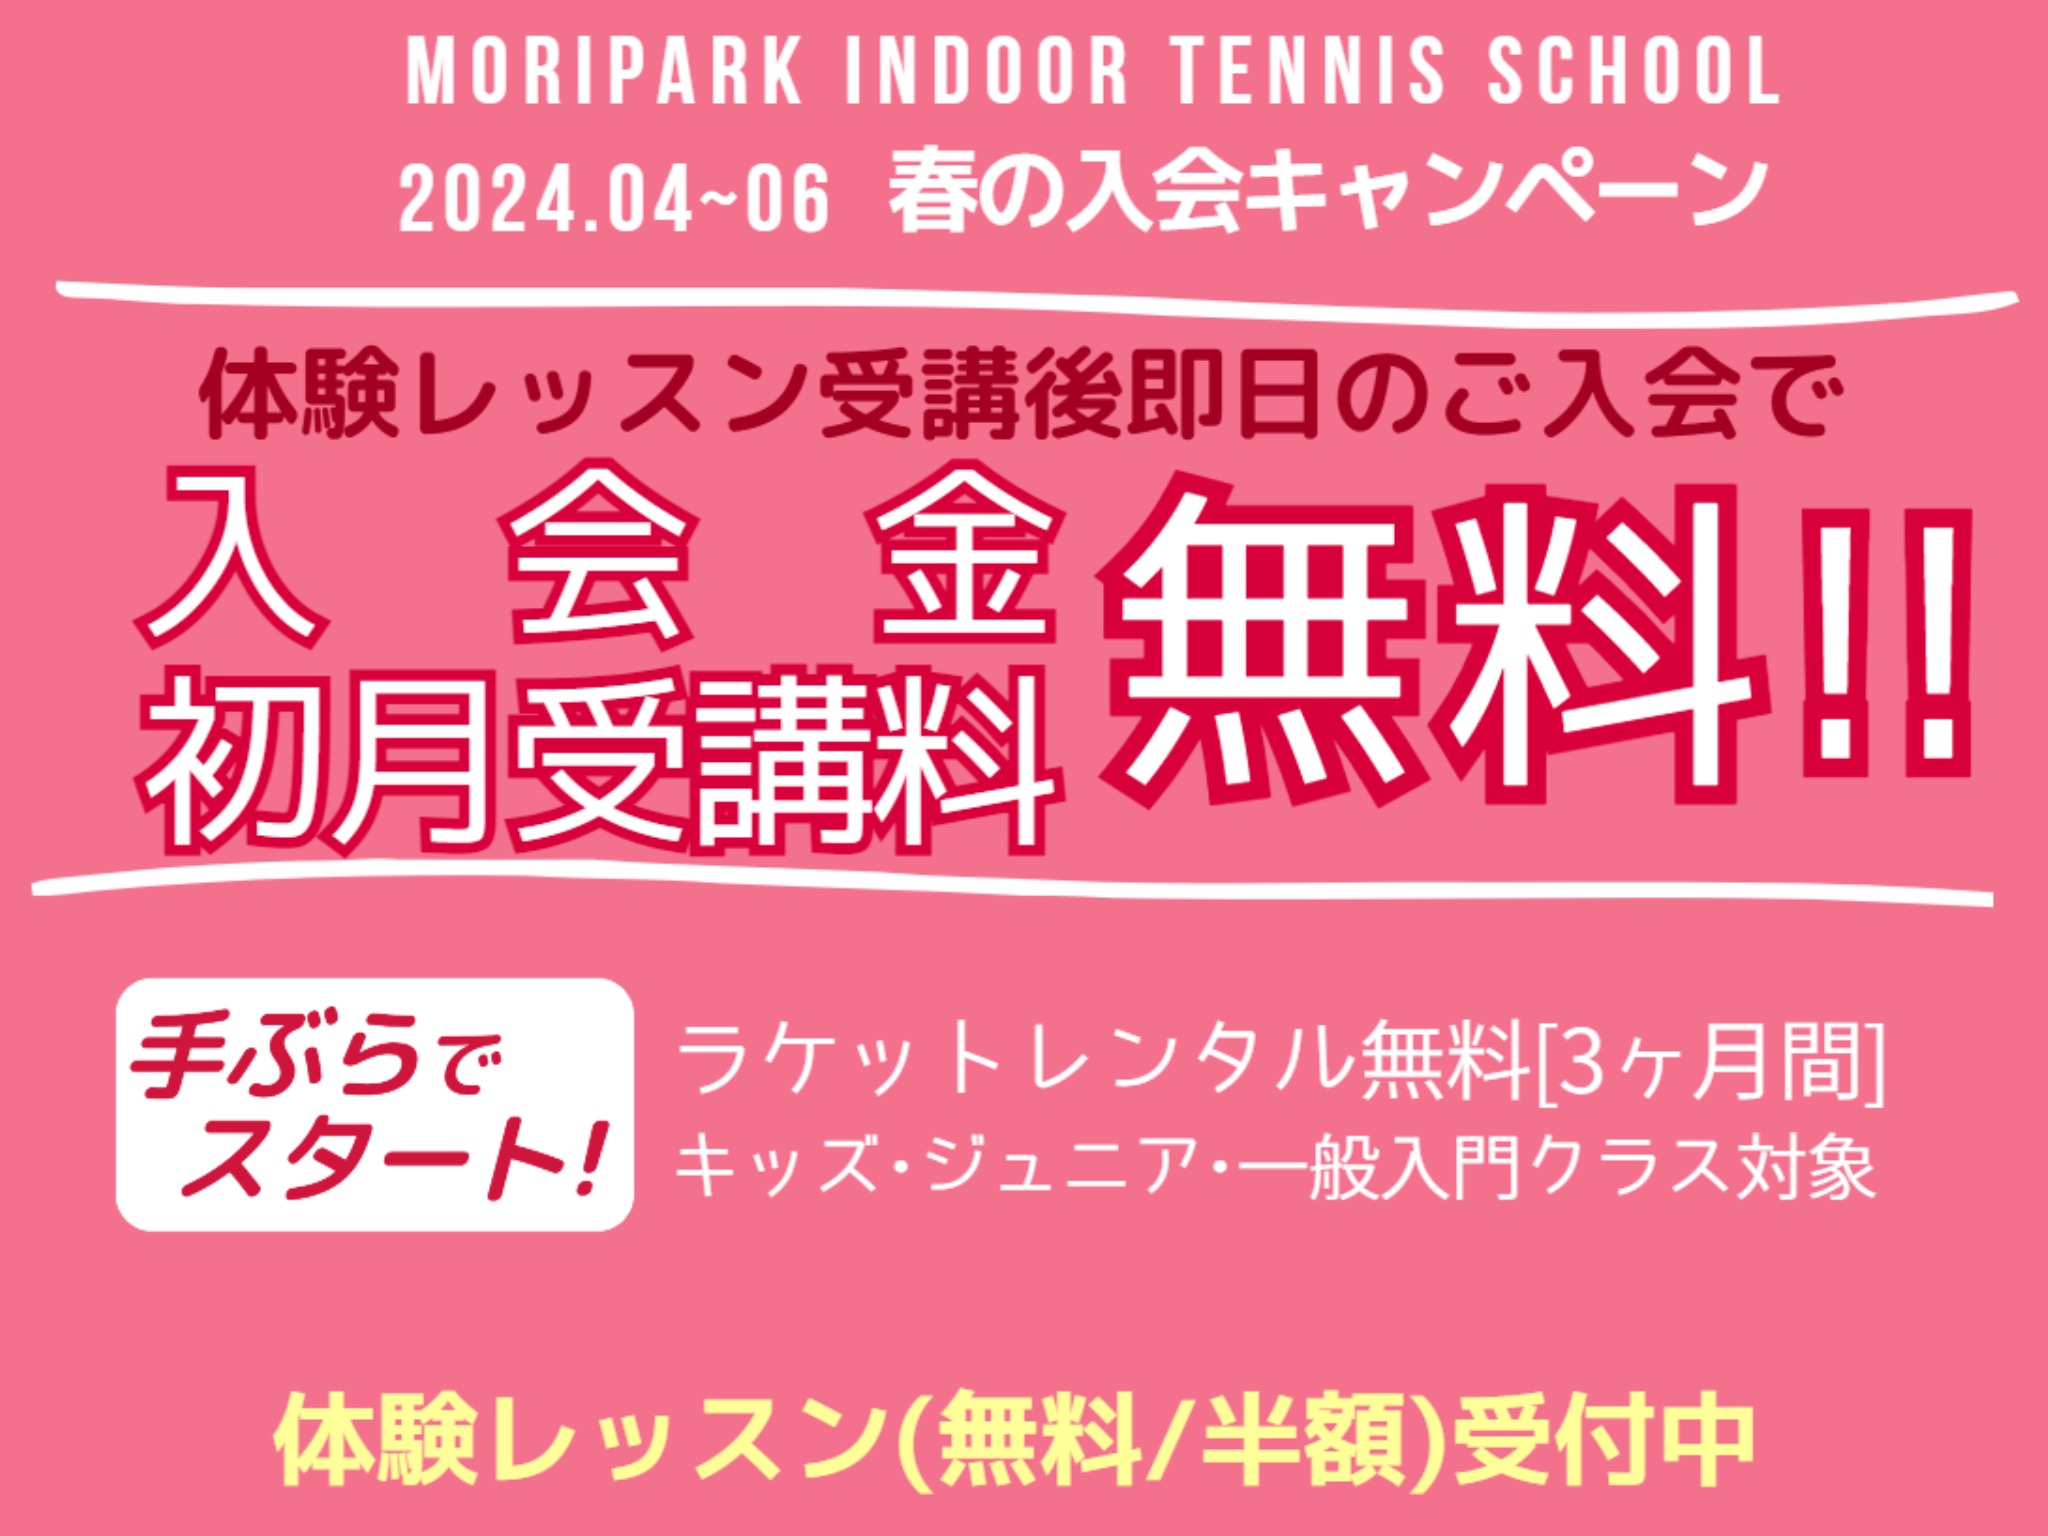 テニススクール春の入会キャンペーン～体験後即日入会でお得に始めよう！ モリパーク インドアテニススクール(旧 昭和の森テニススクール)